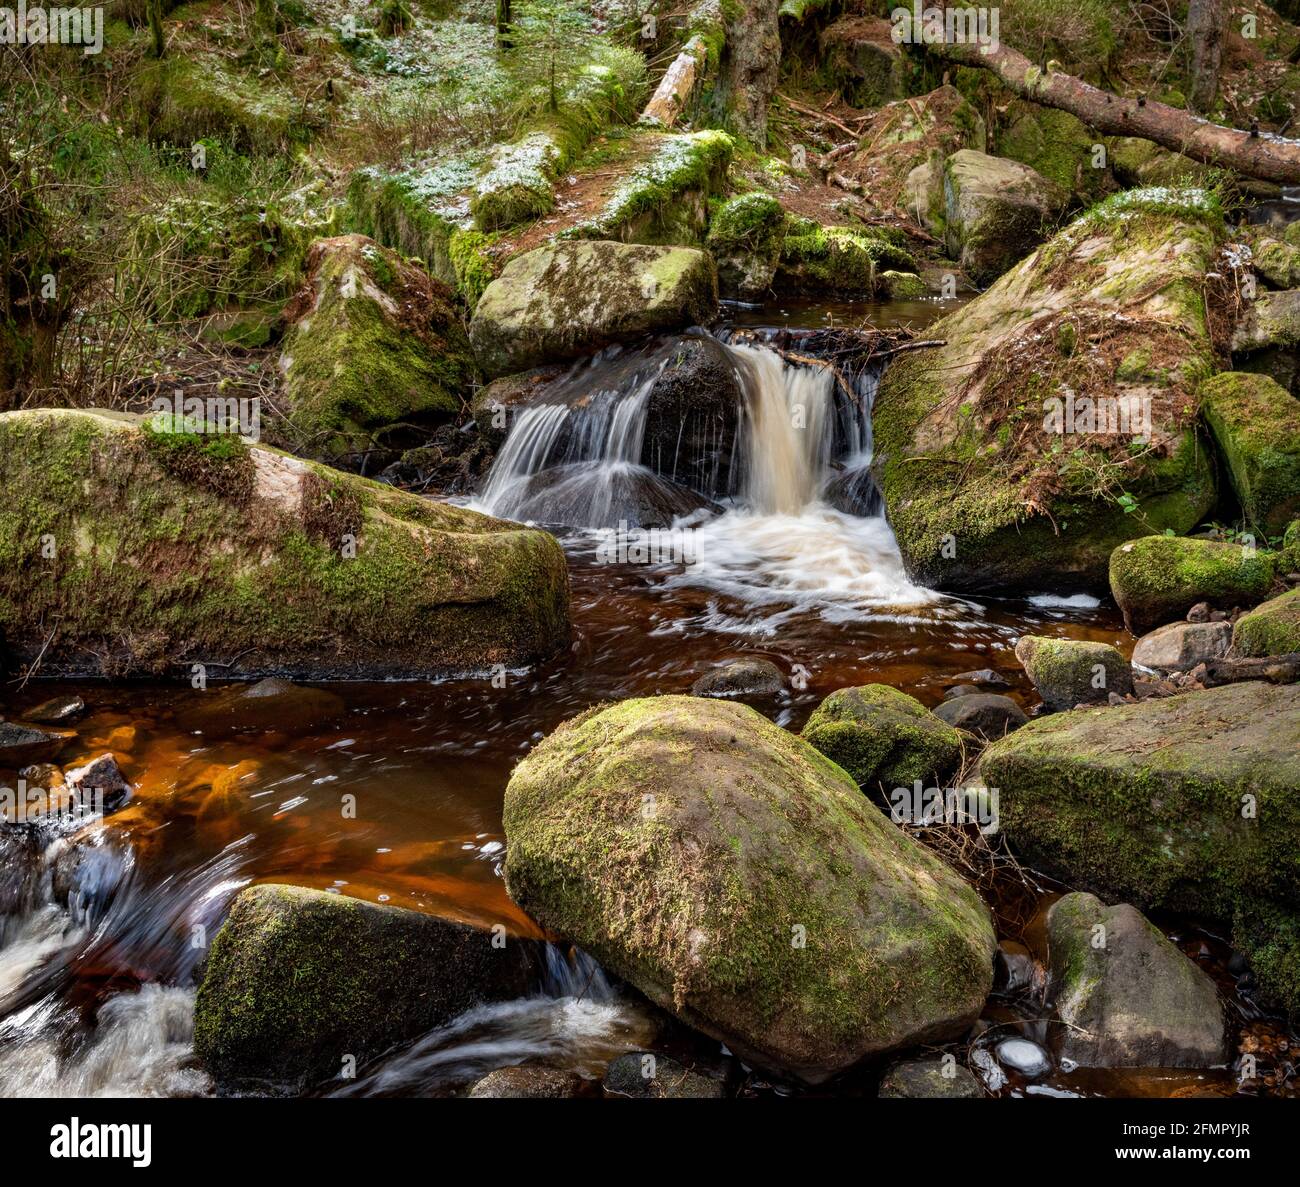 Réserve naturelle de Wyming brook, parc national de Peak District, Sheffield, Yorkshire du Sud, Angleterre, Royaume-Uni Banque D'Images